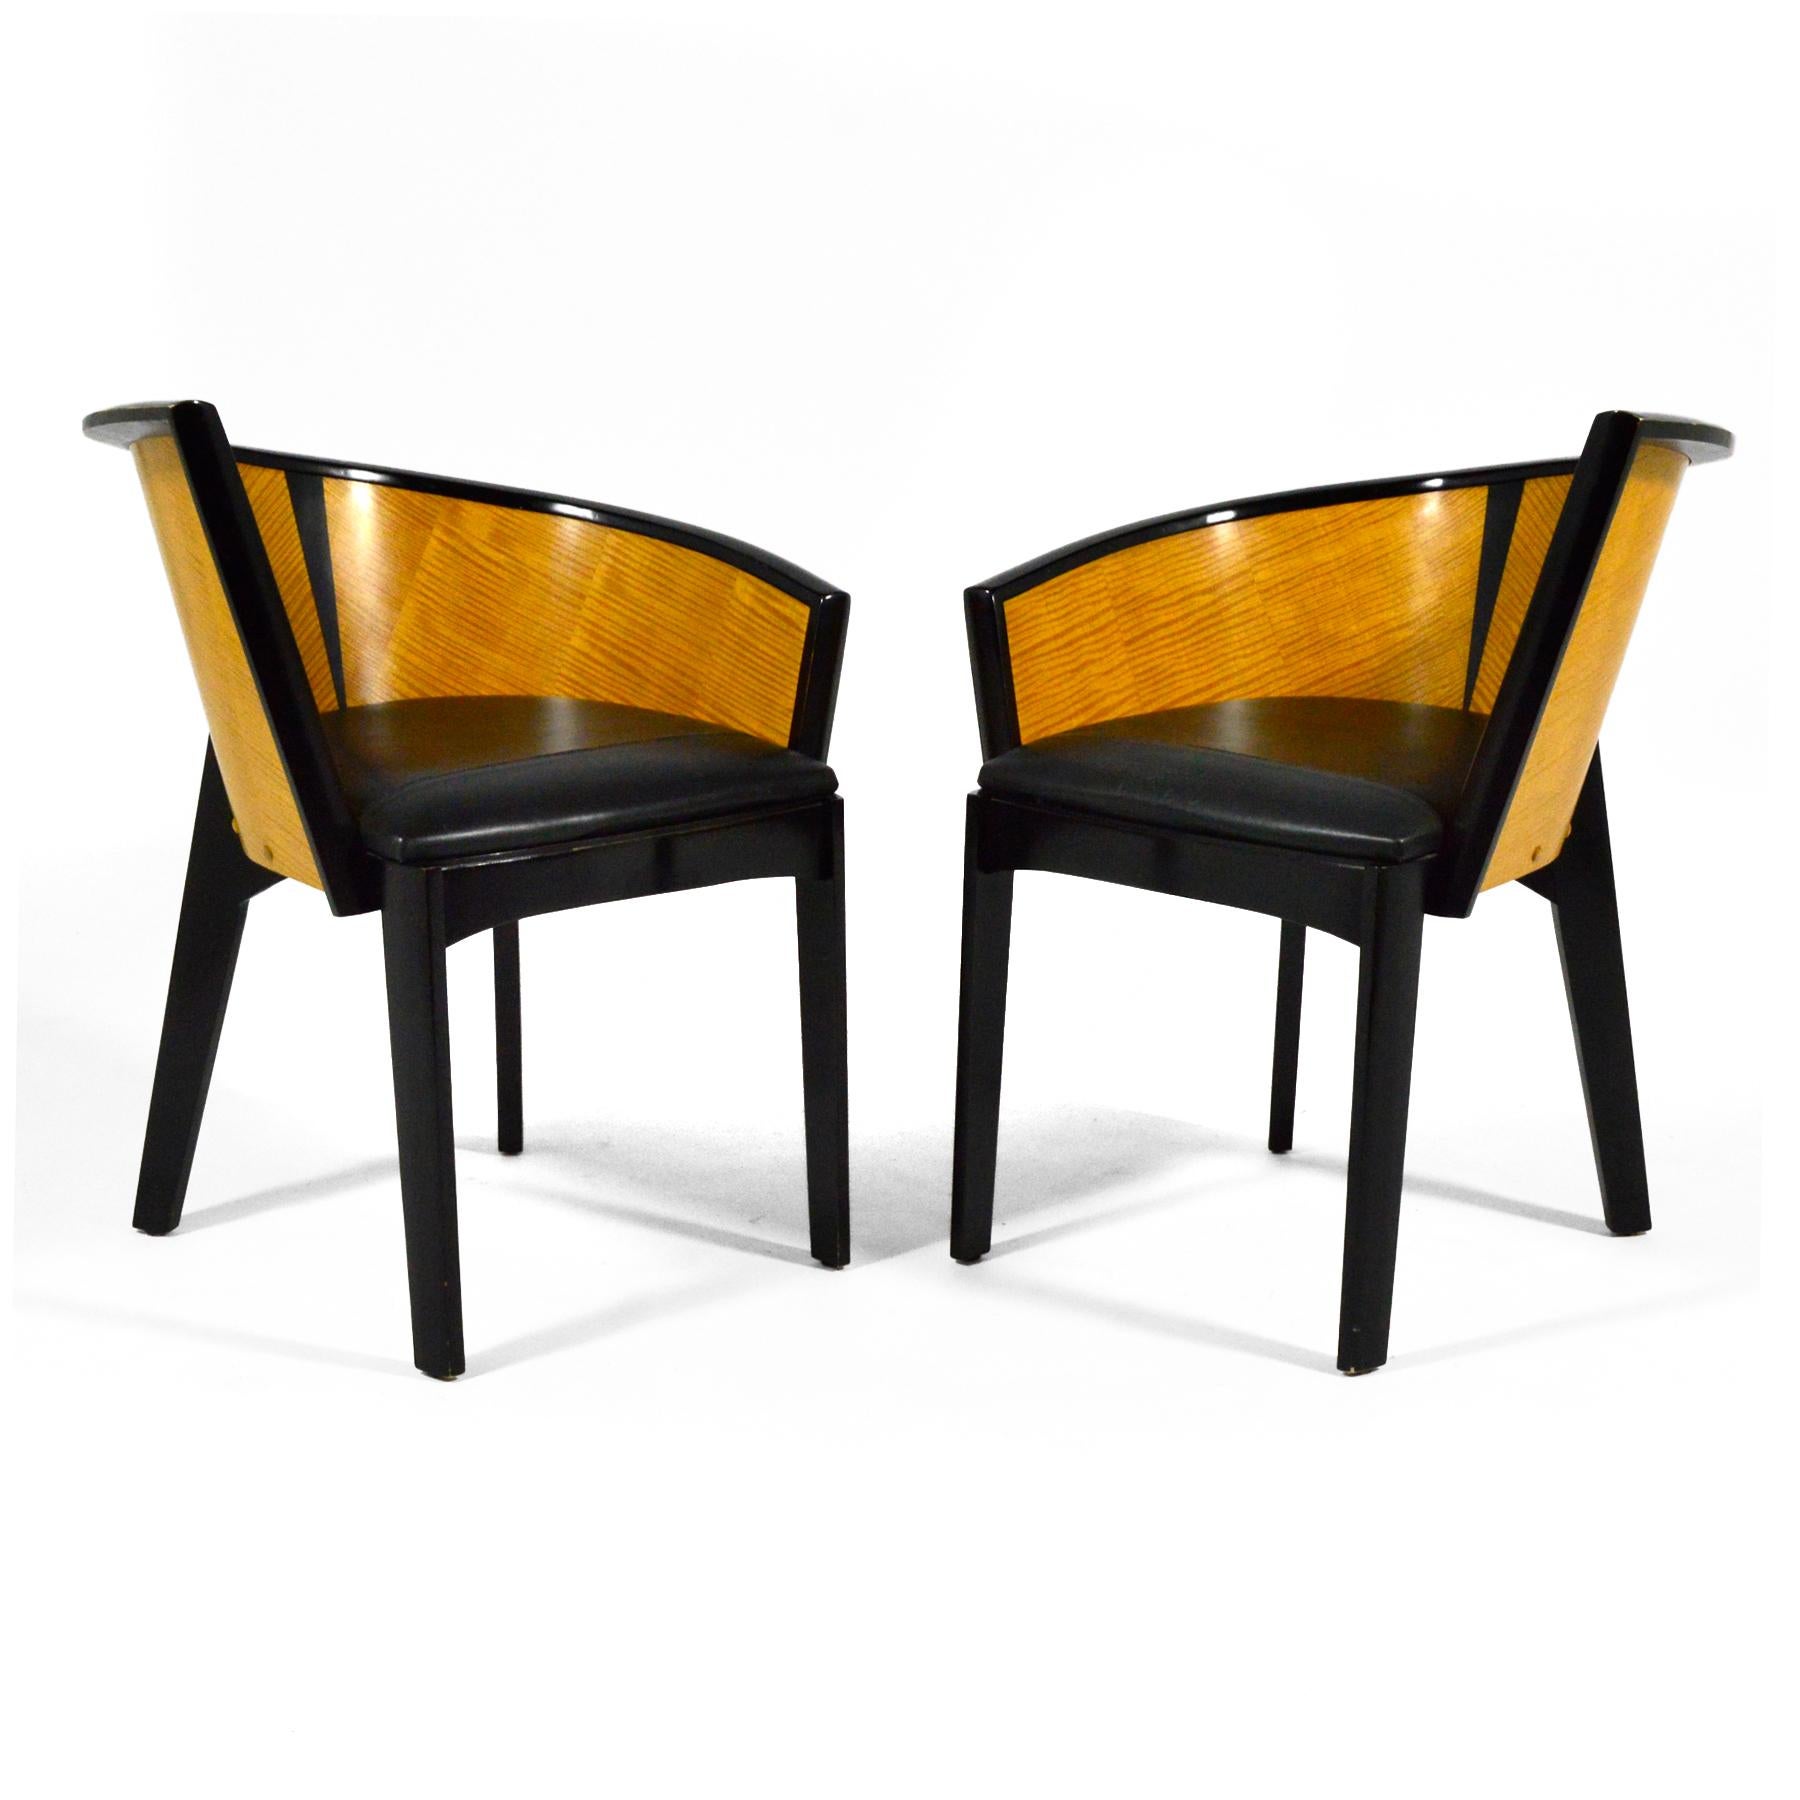 Der 1987 von Paul Haigh für Bernhardt entworfene Stuhl Sinistra ist eine Kombination aus Beistellstuhl und Barrel Chair und besticht durch sein asymmetrisches Design. Reichhaltige Holzfurniere, schwarzer Lack und Leder vereinen sich in diesem